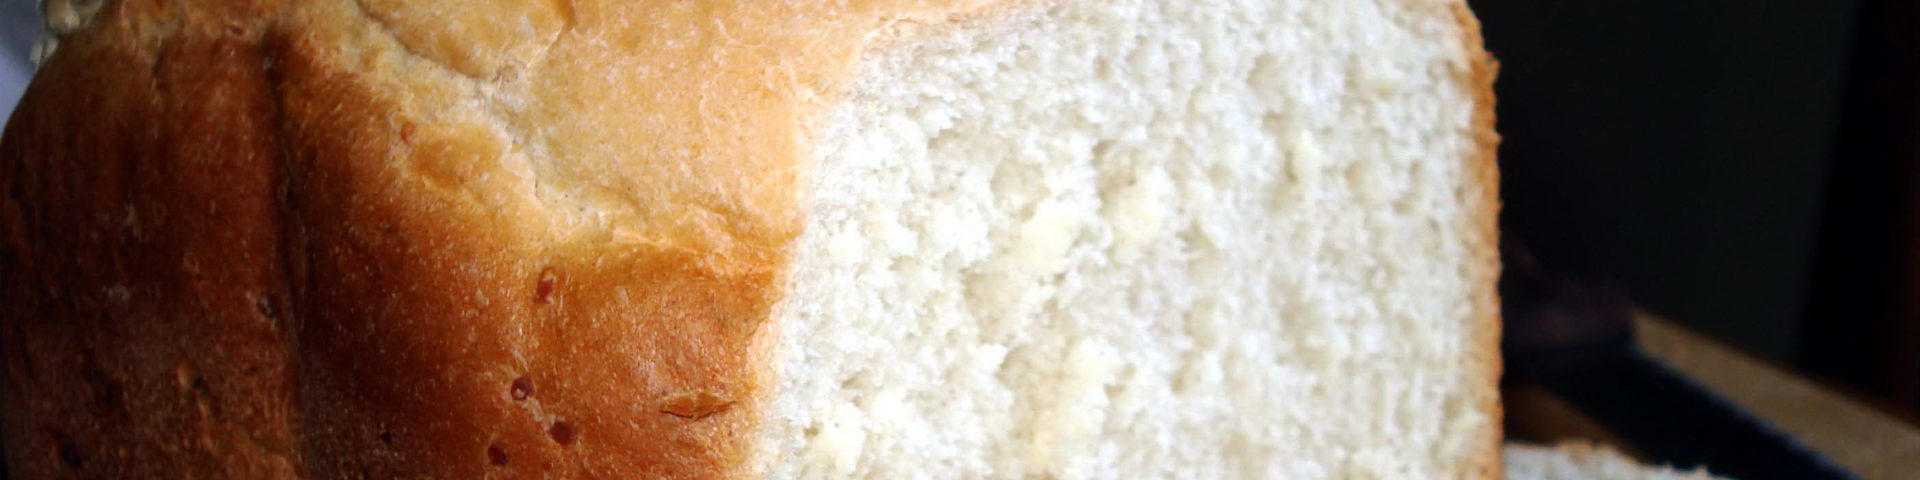 рисовый хлеб